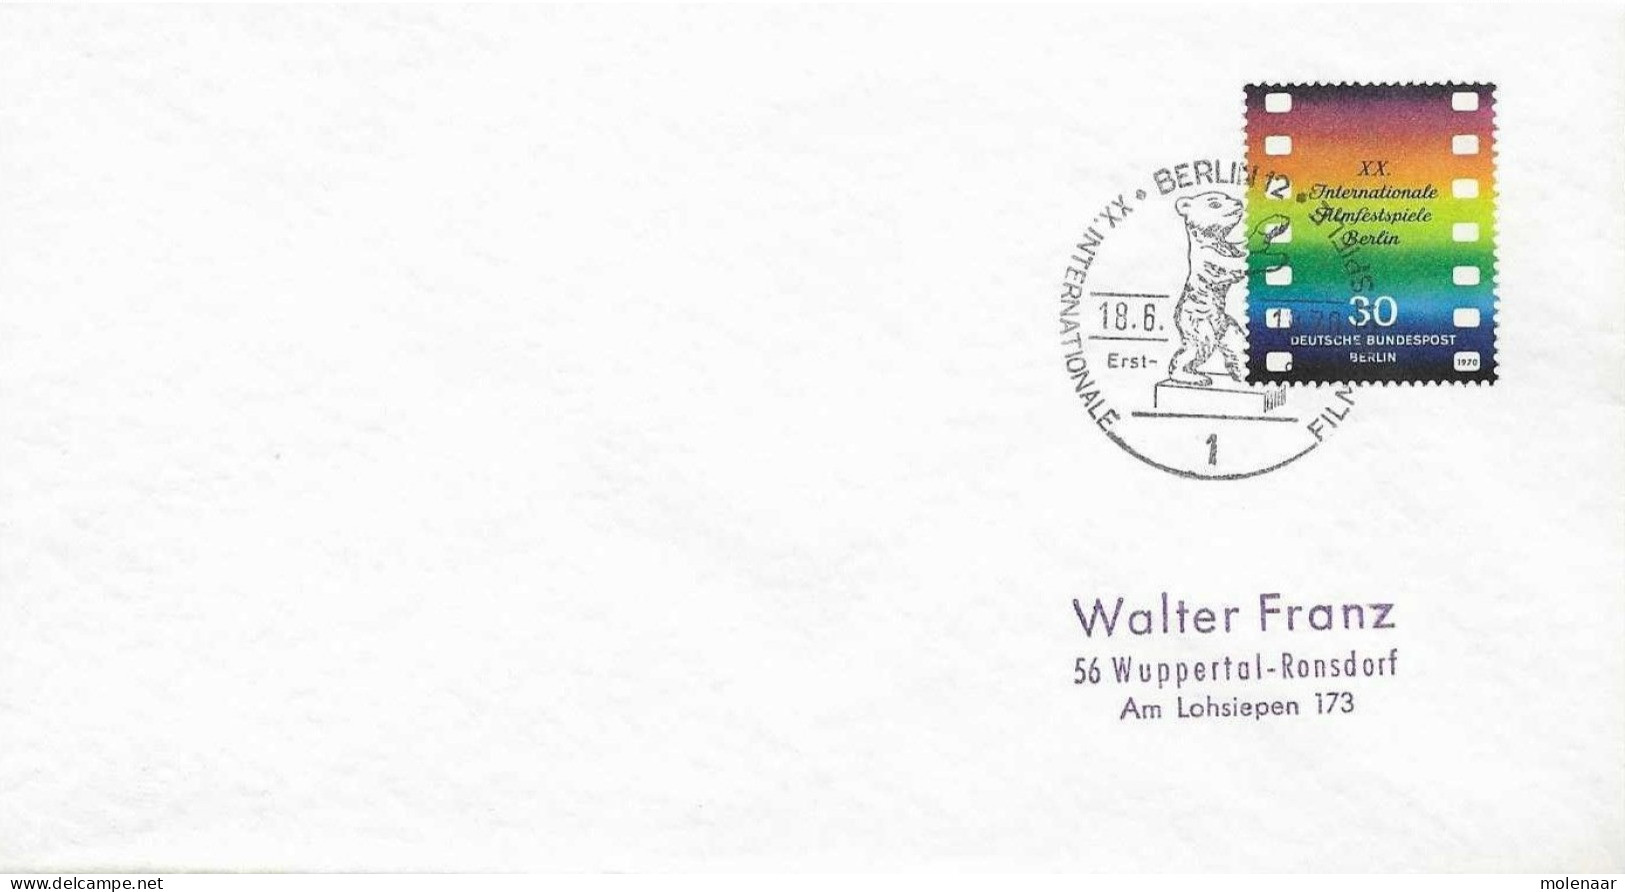 Postzegels > Europa > Duitsland > Berlijn > 1e Dag FDC (brieven)  No. 358 (17161) - 1948-1970